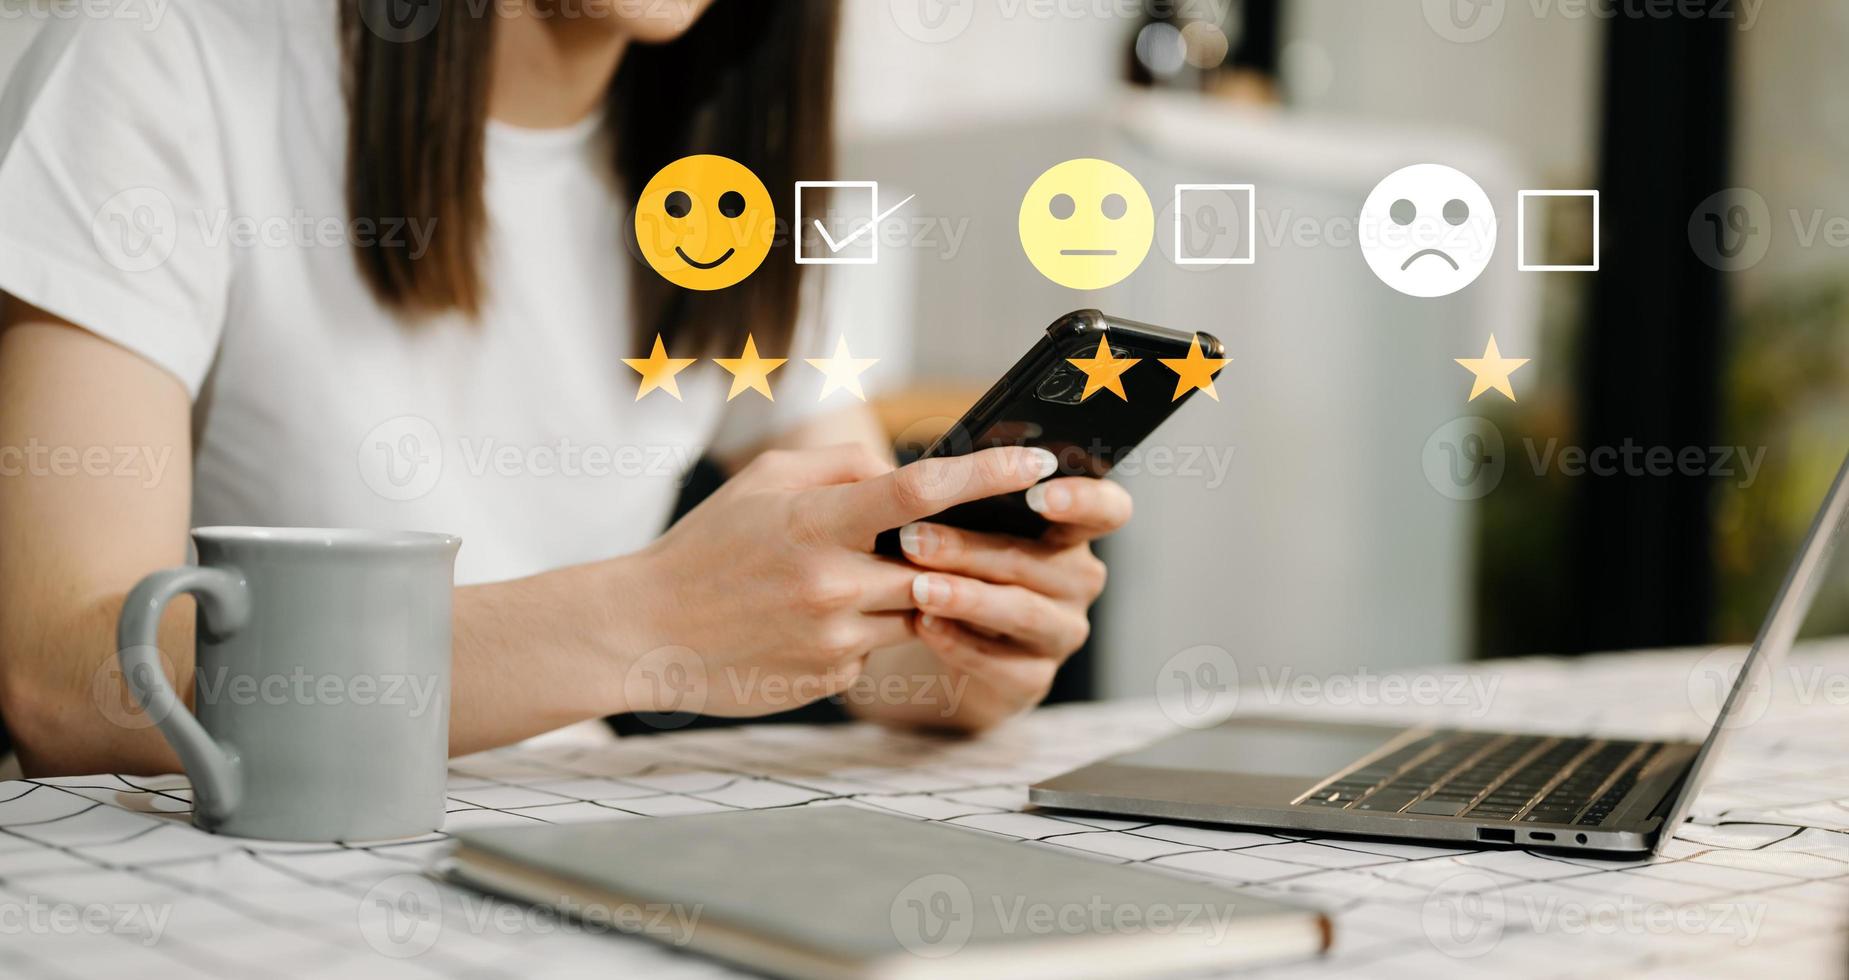 Kundenservice-Bewertungskonzept. geschäftsfrau, die gesichtslächeln-emoticon-show auf virtuellem bildschirm bei tablet und smartphone im büro drückt foto